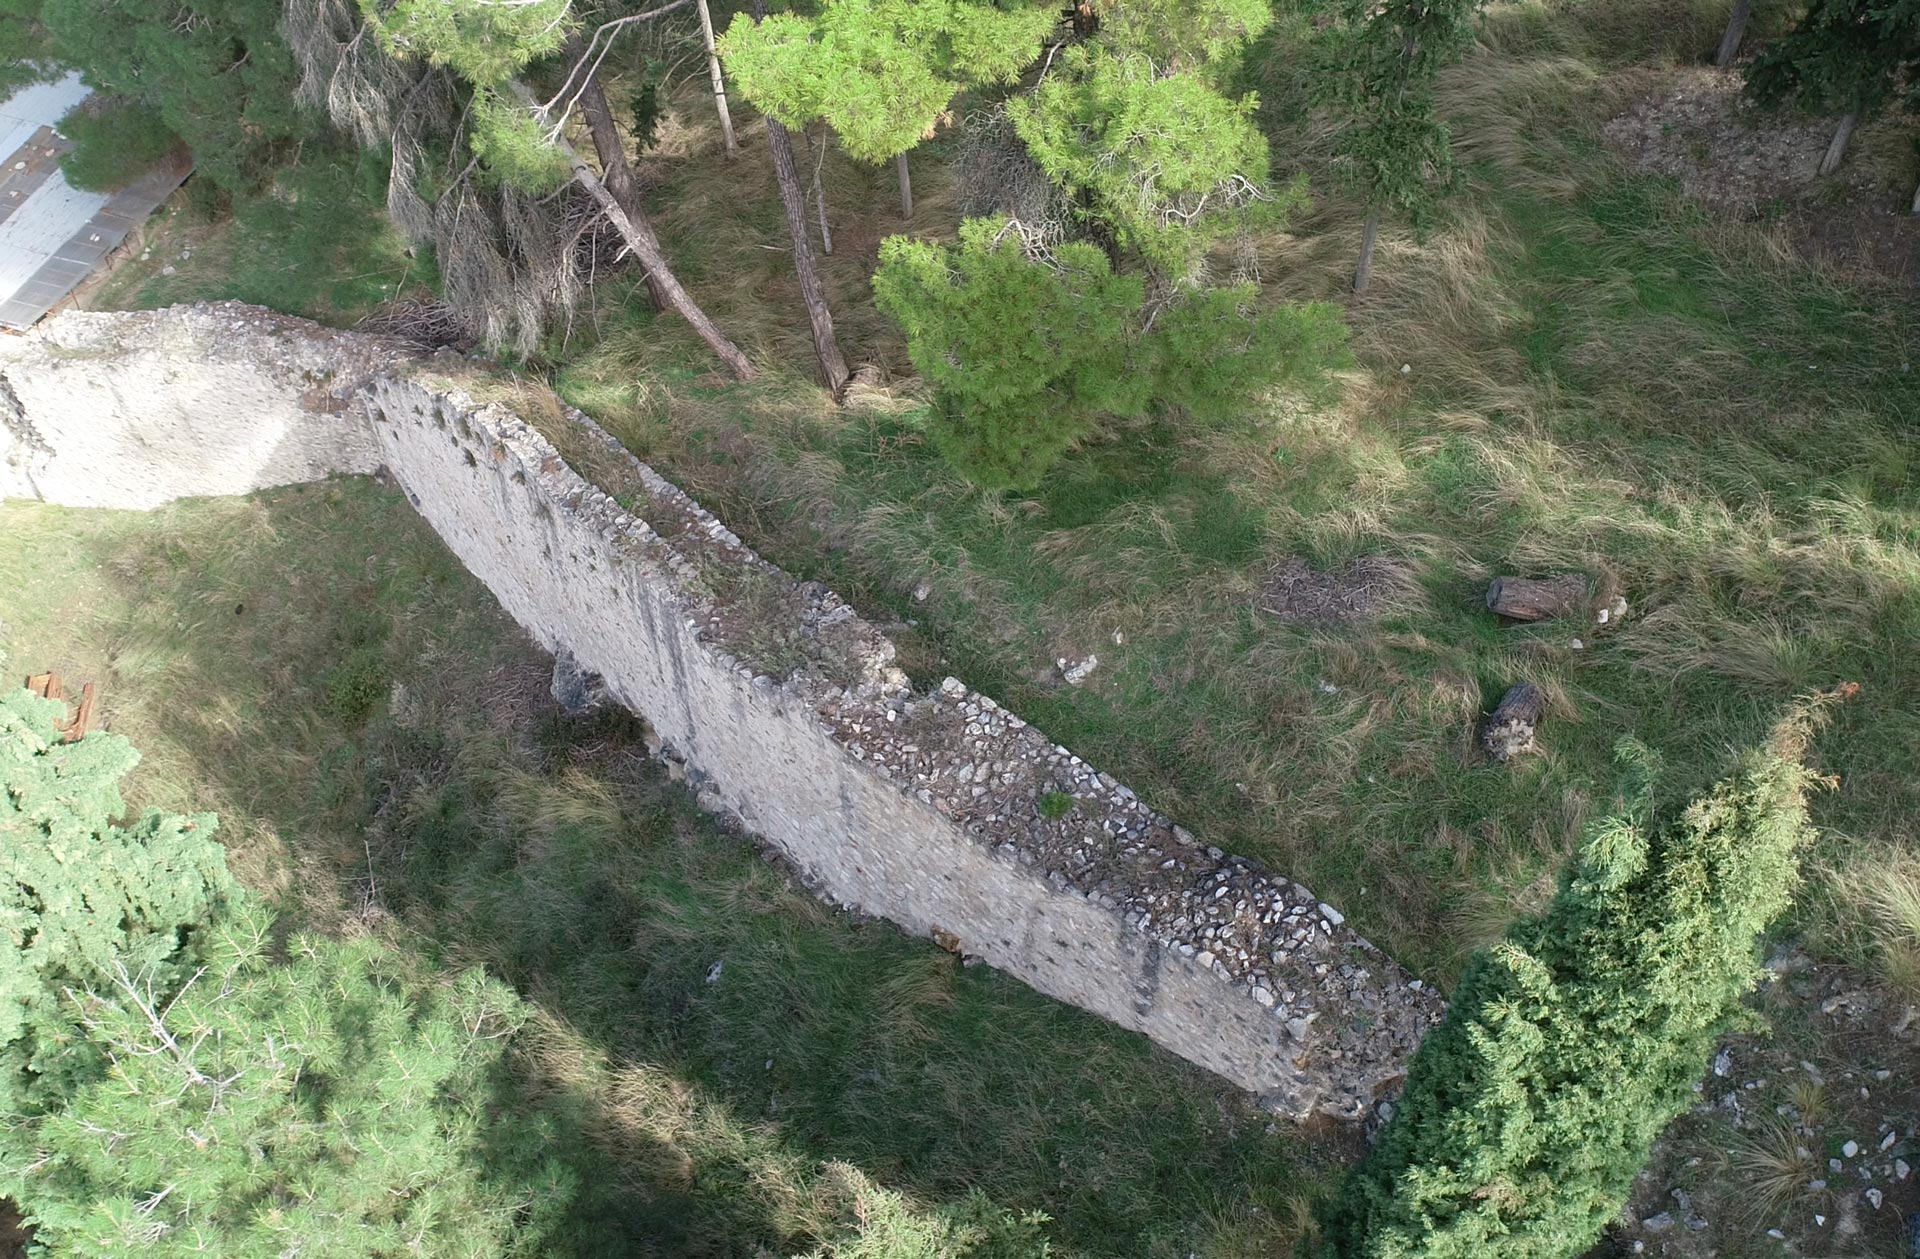 Φωτογραφία στην οποία διακρίνεται τμήμα του διάμεσου τείχους των Σερβίων και το φυσικό τοπίο που το περιβάλλει.